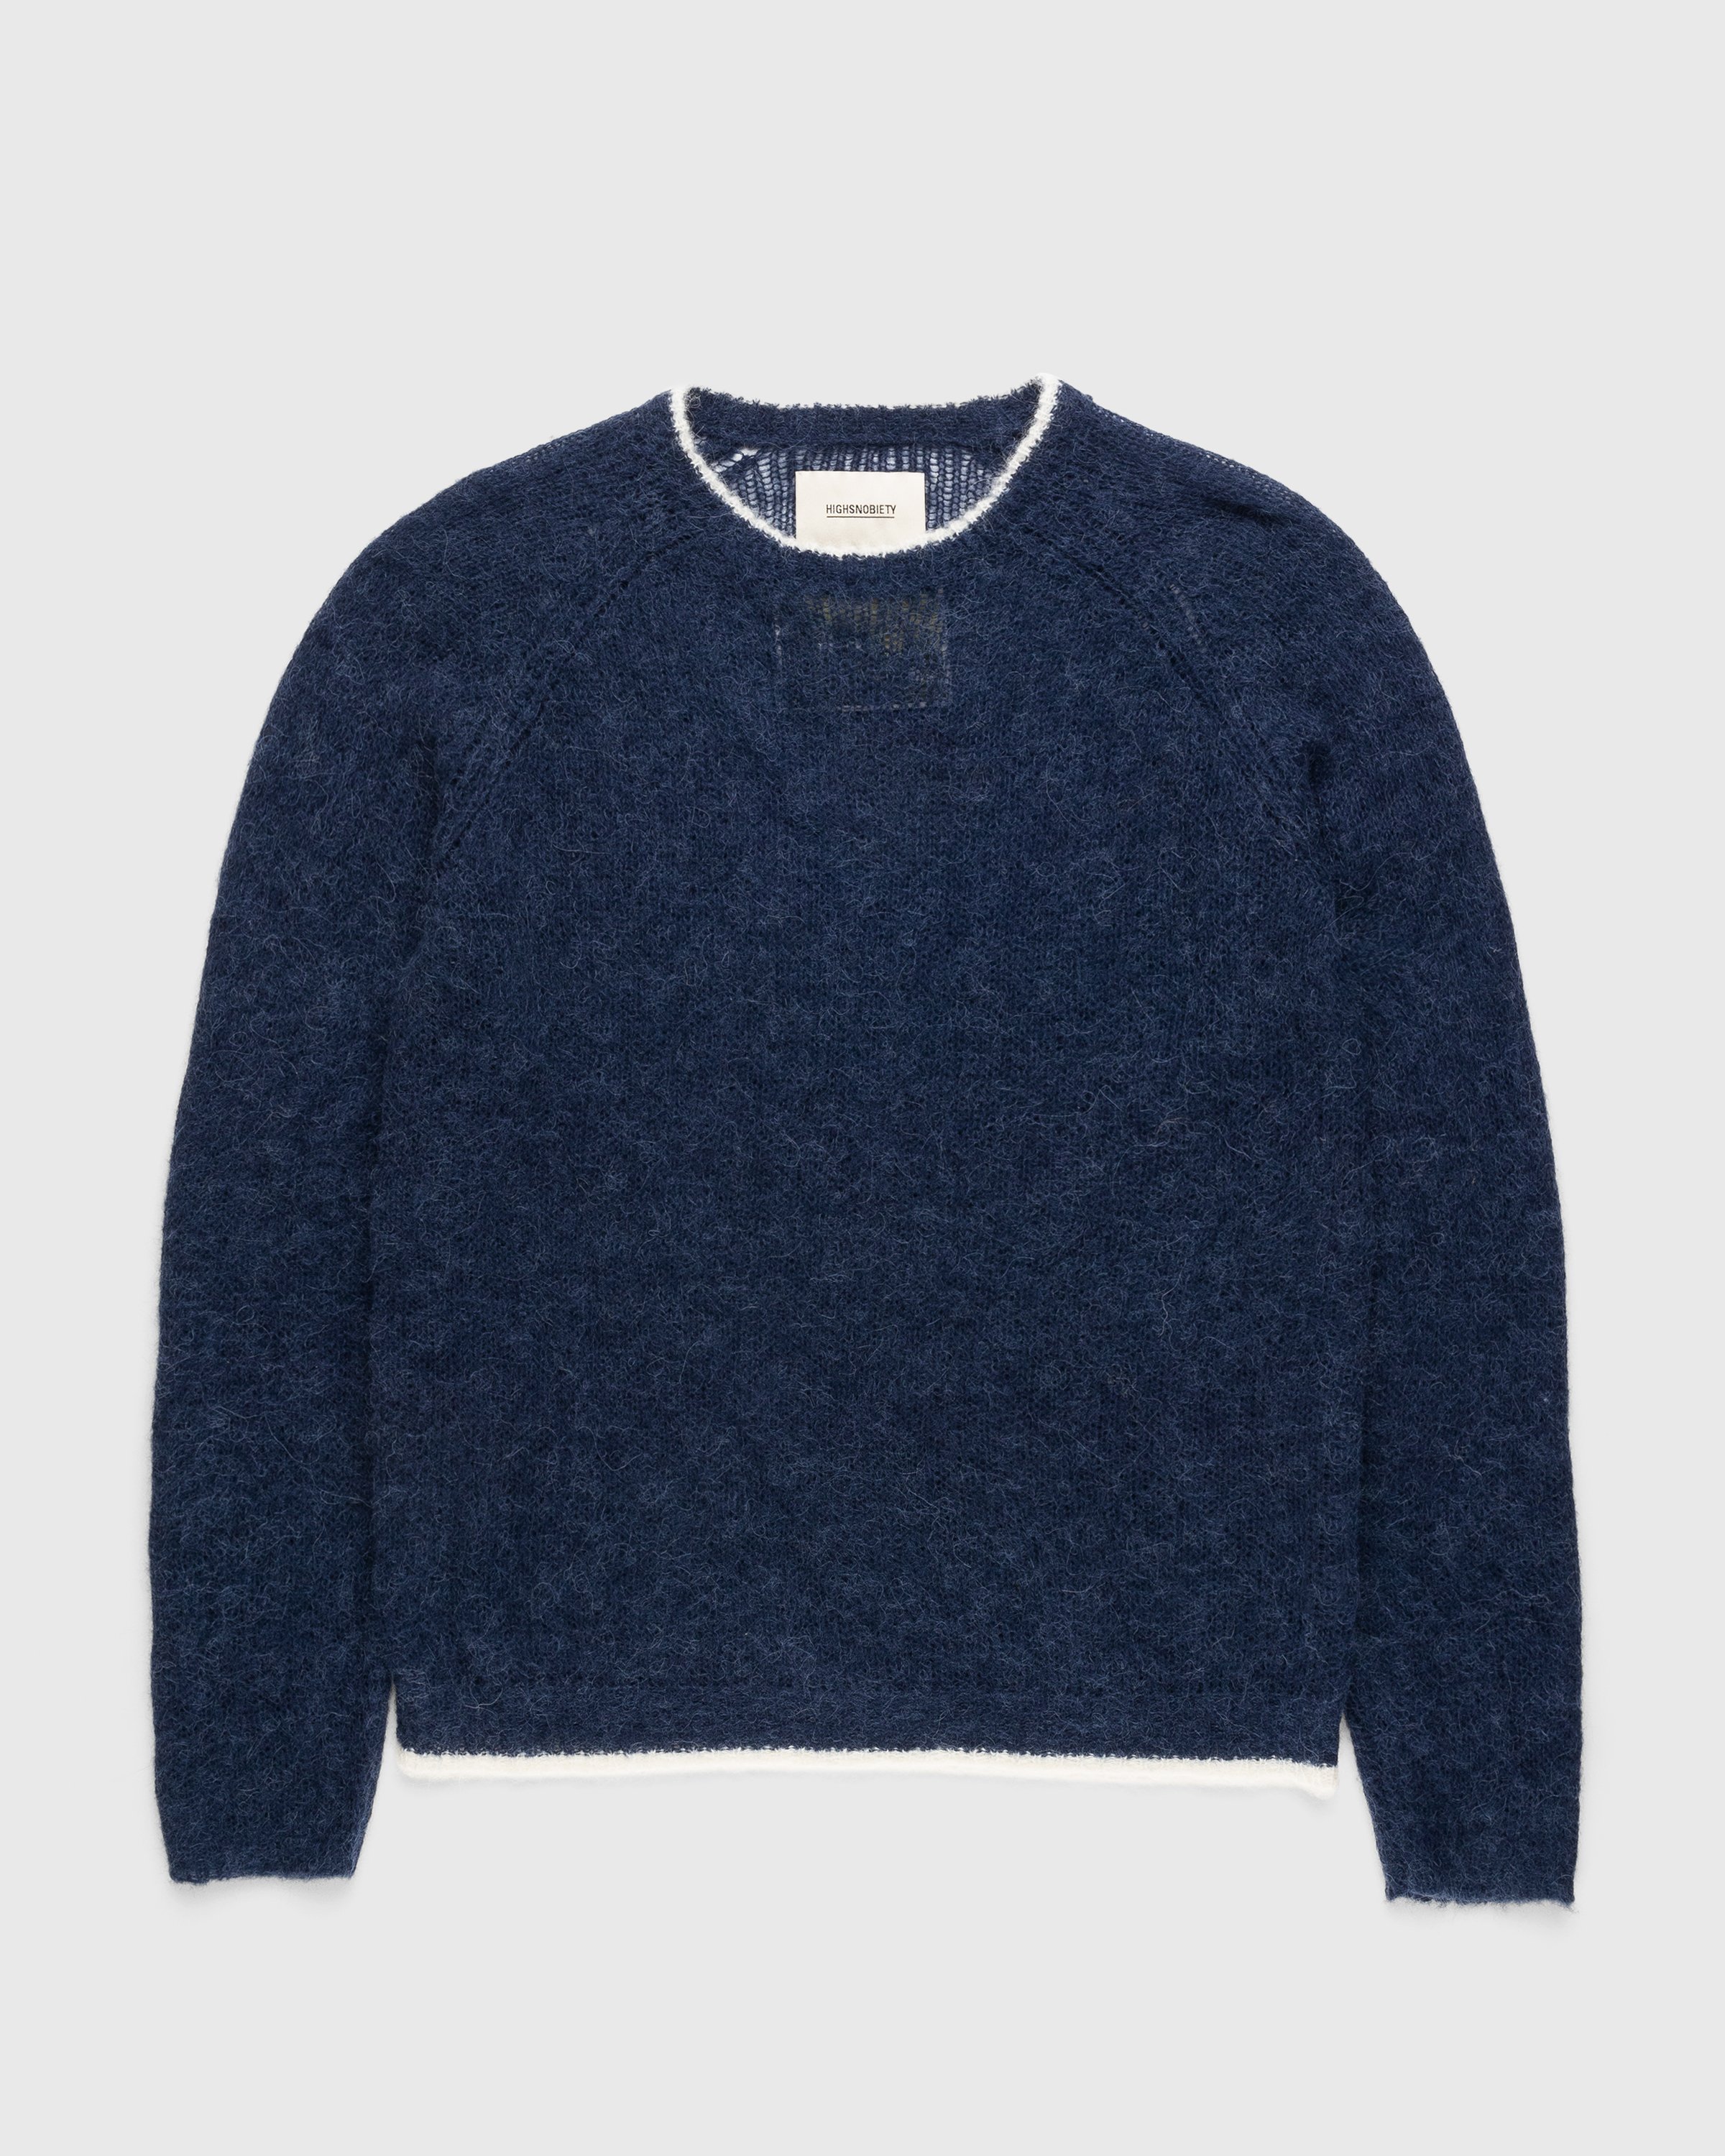 Highsnobiety - Crew Sweater Navy/Ivory - Clothing - Blue - Image 1